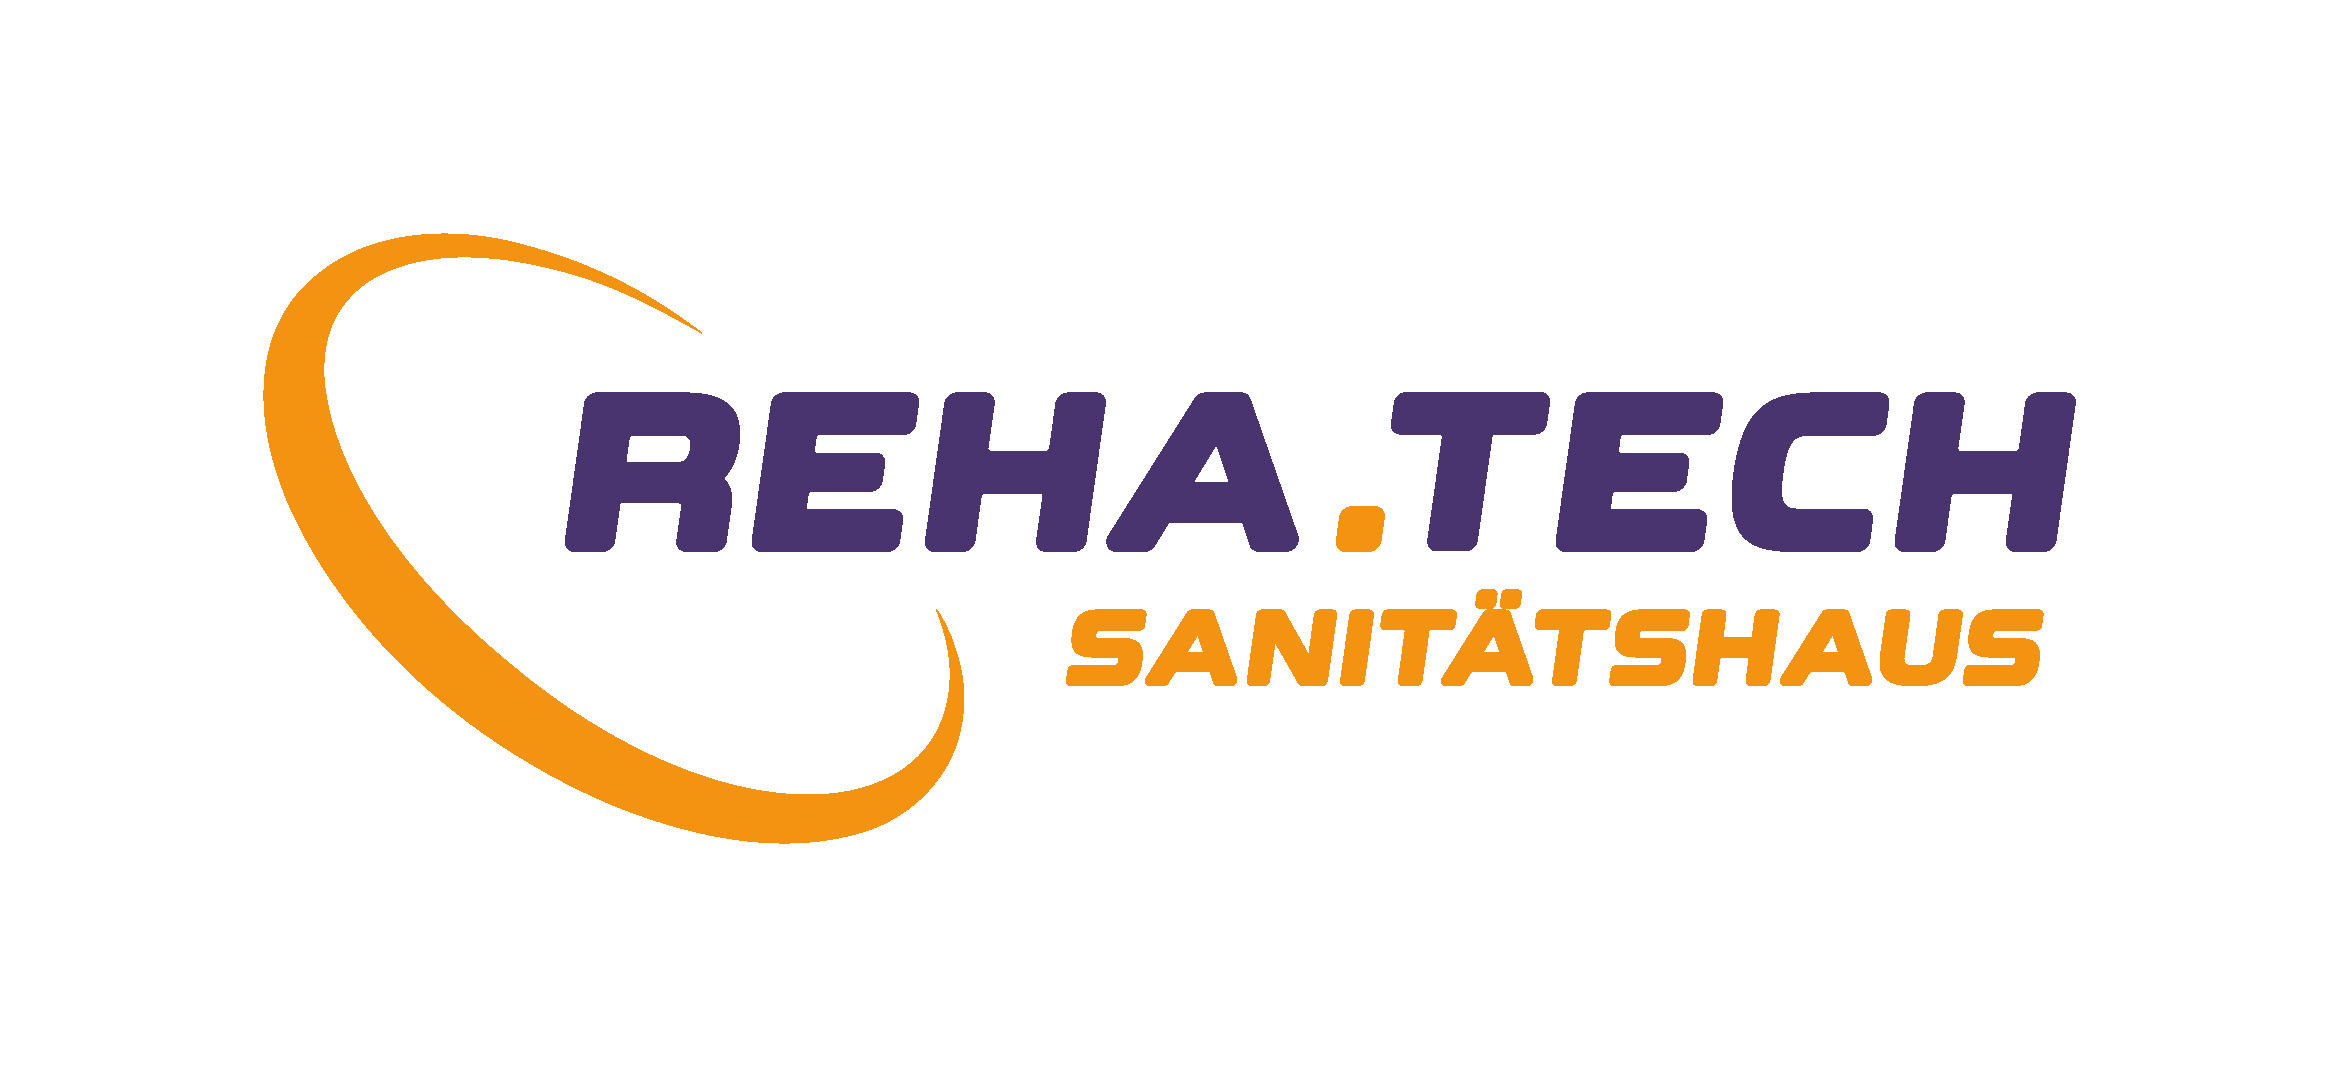 Logo Sanitaetshaus